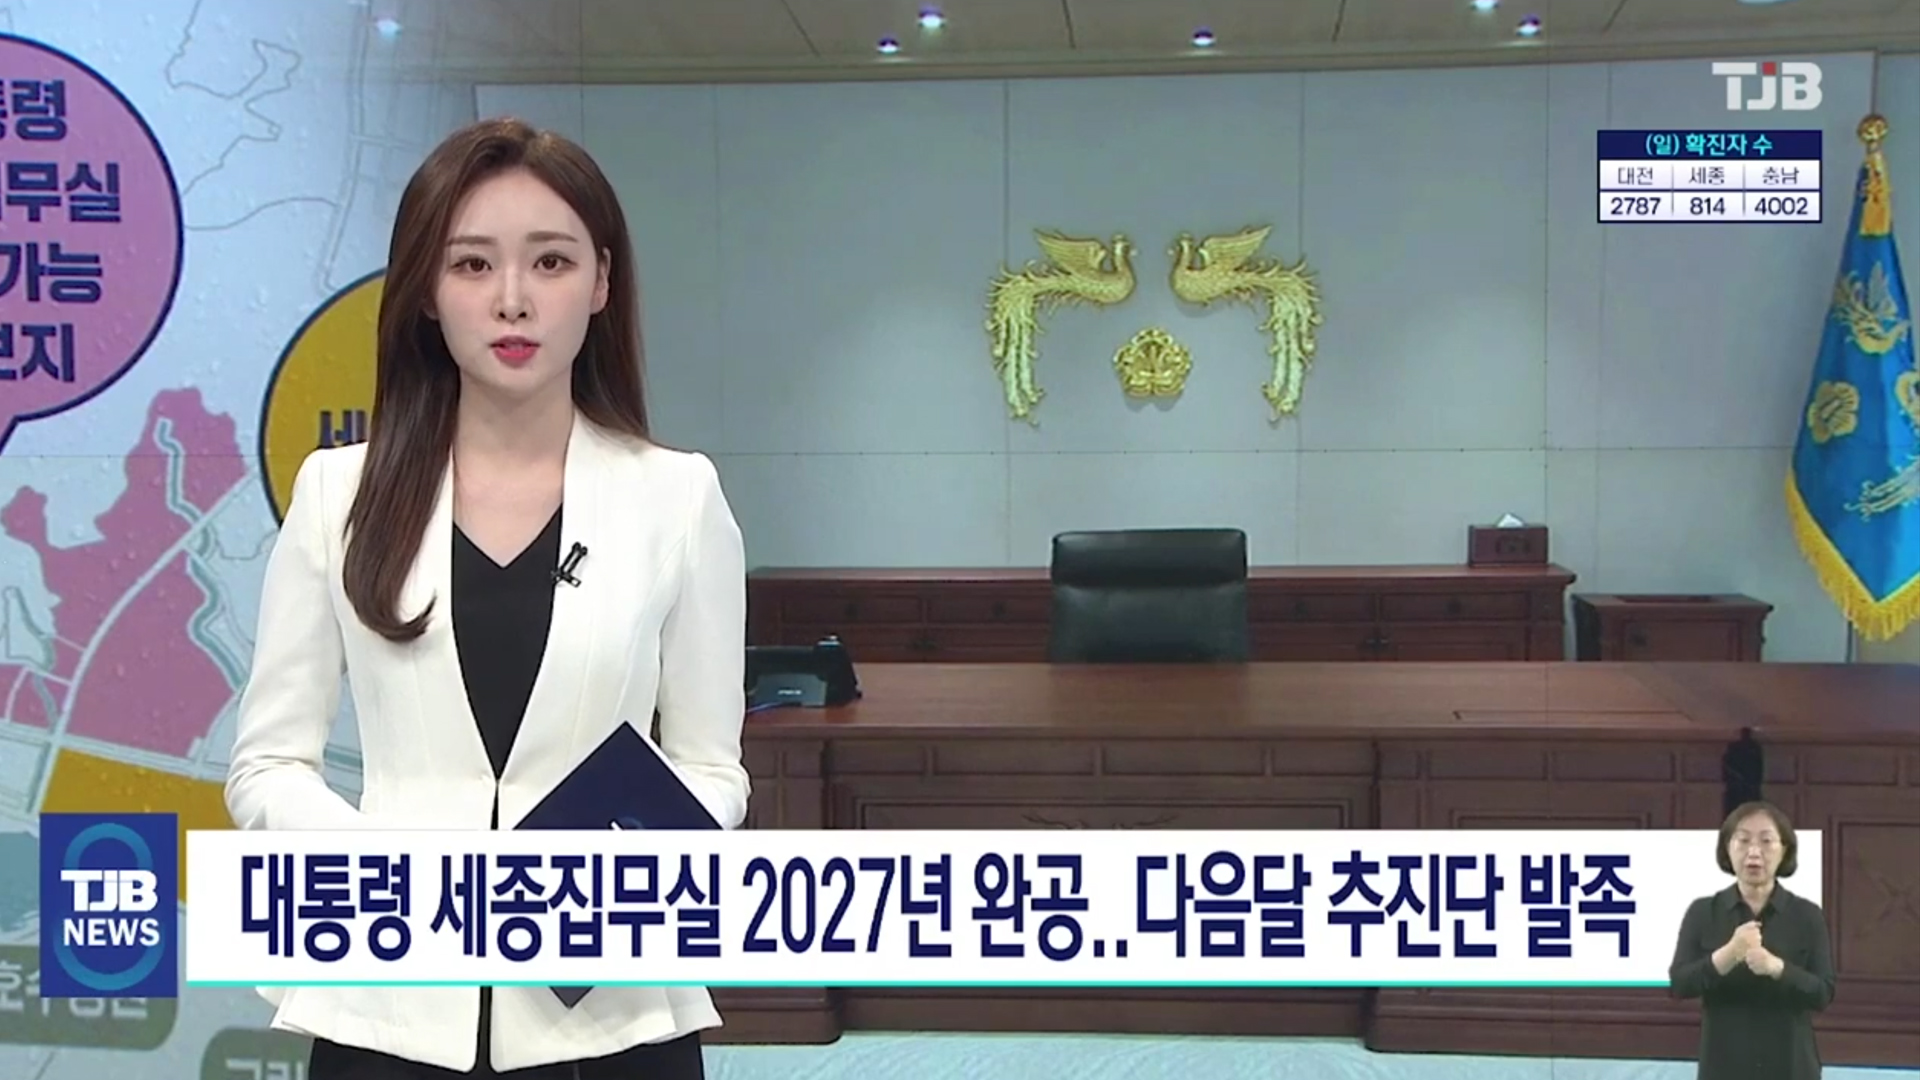 <TJB 대전·세종·충남뉴스> 대통령 세종집무실 2027년까지 짓는다..다음달 추진단 발족